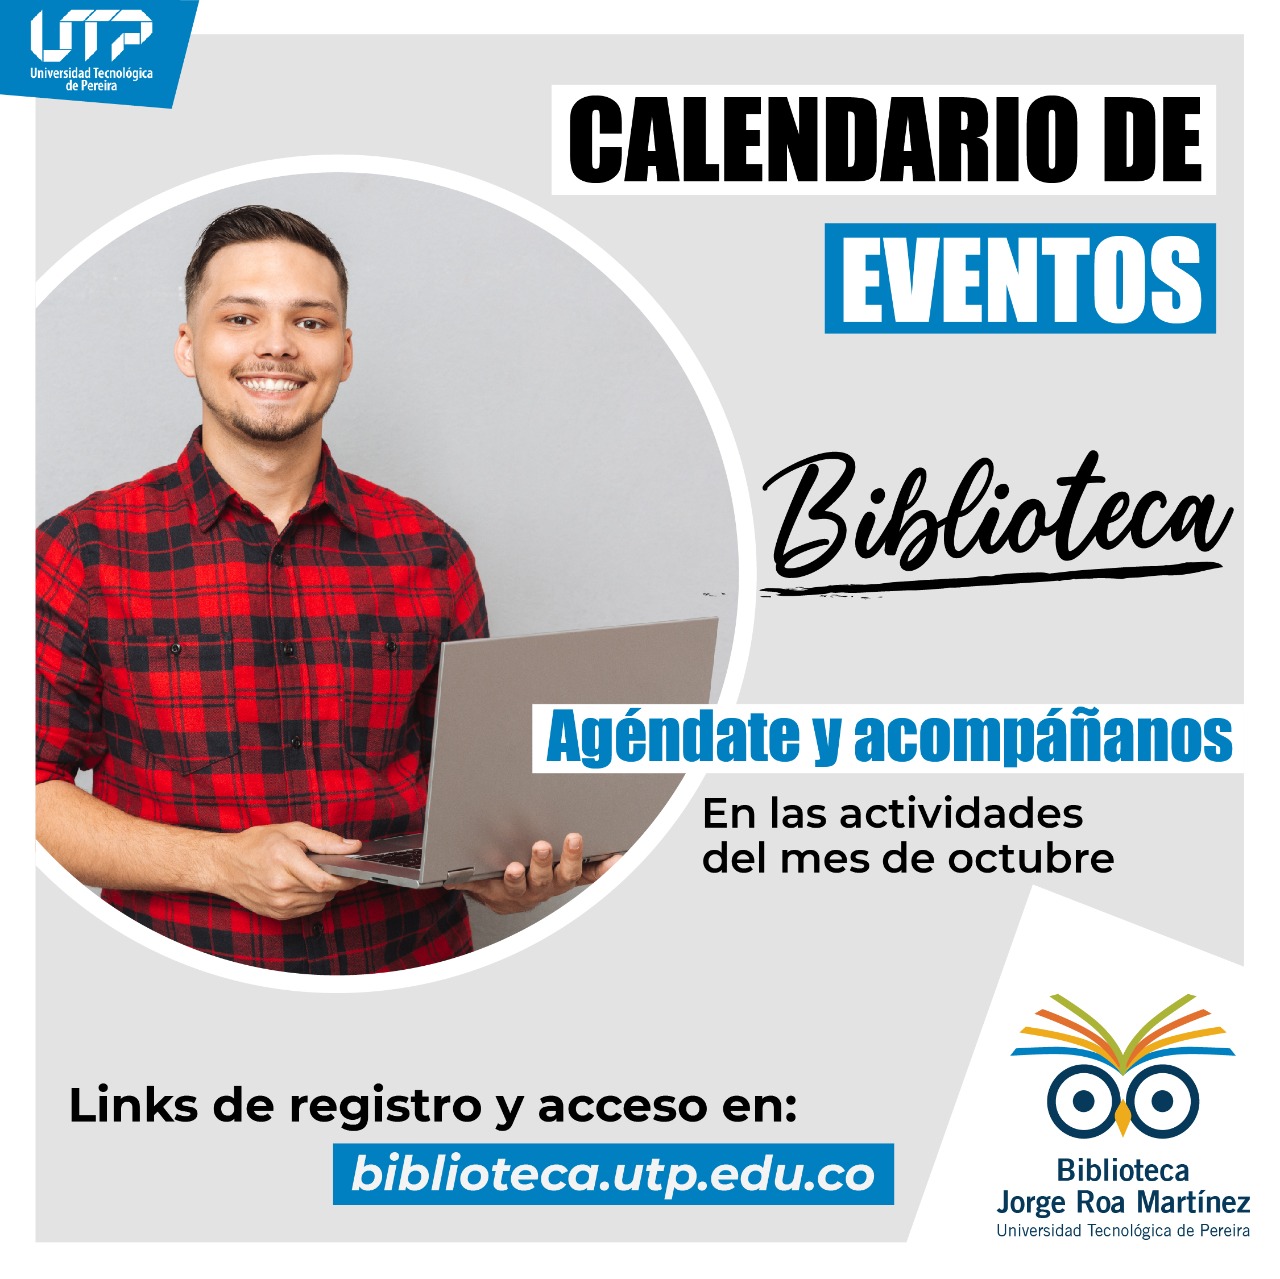 Calendario de eventos de Biblioteca octubre